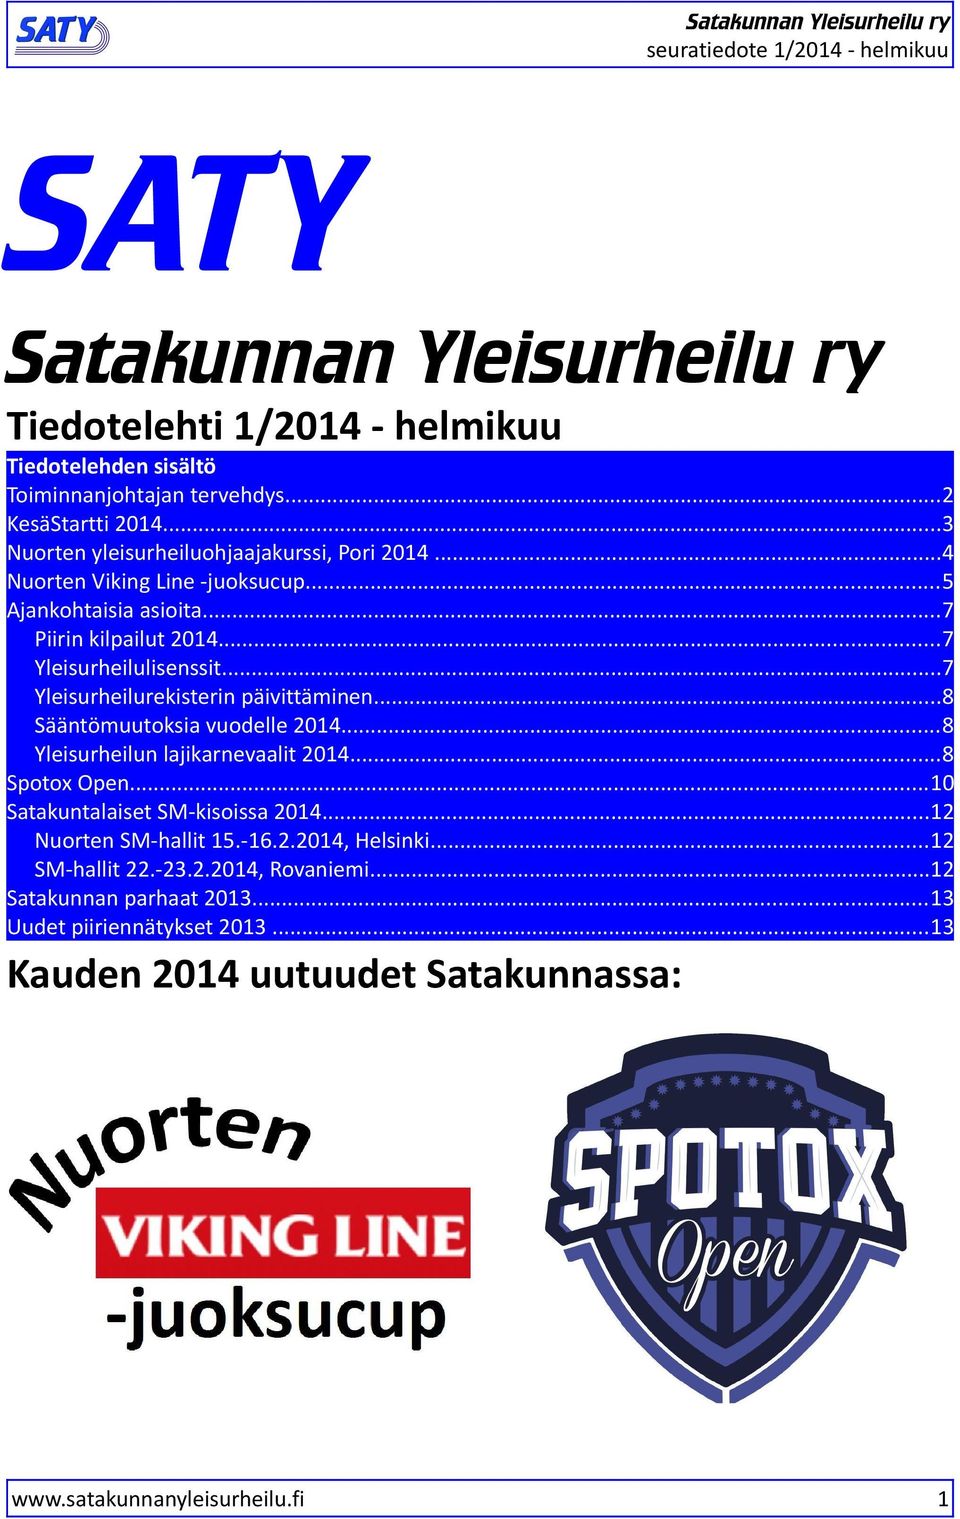 ..7 Yleisurheilurekisterin päivittäminen...8 Sääntömuutoksia vuodelle 2014...8 Yleisurheilun lajikarnevaalit 2014...8 Spotox Open...10 Satakuntalaiset SM-kisoissa 2014.